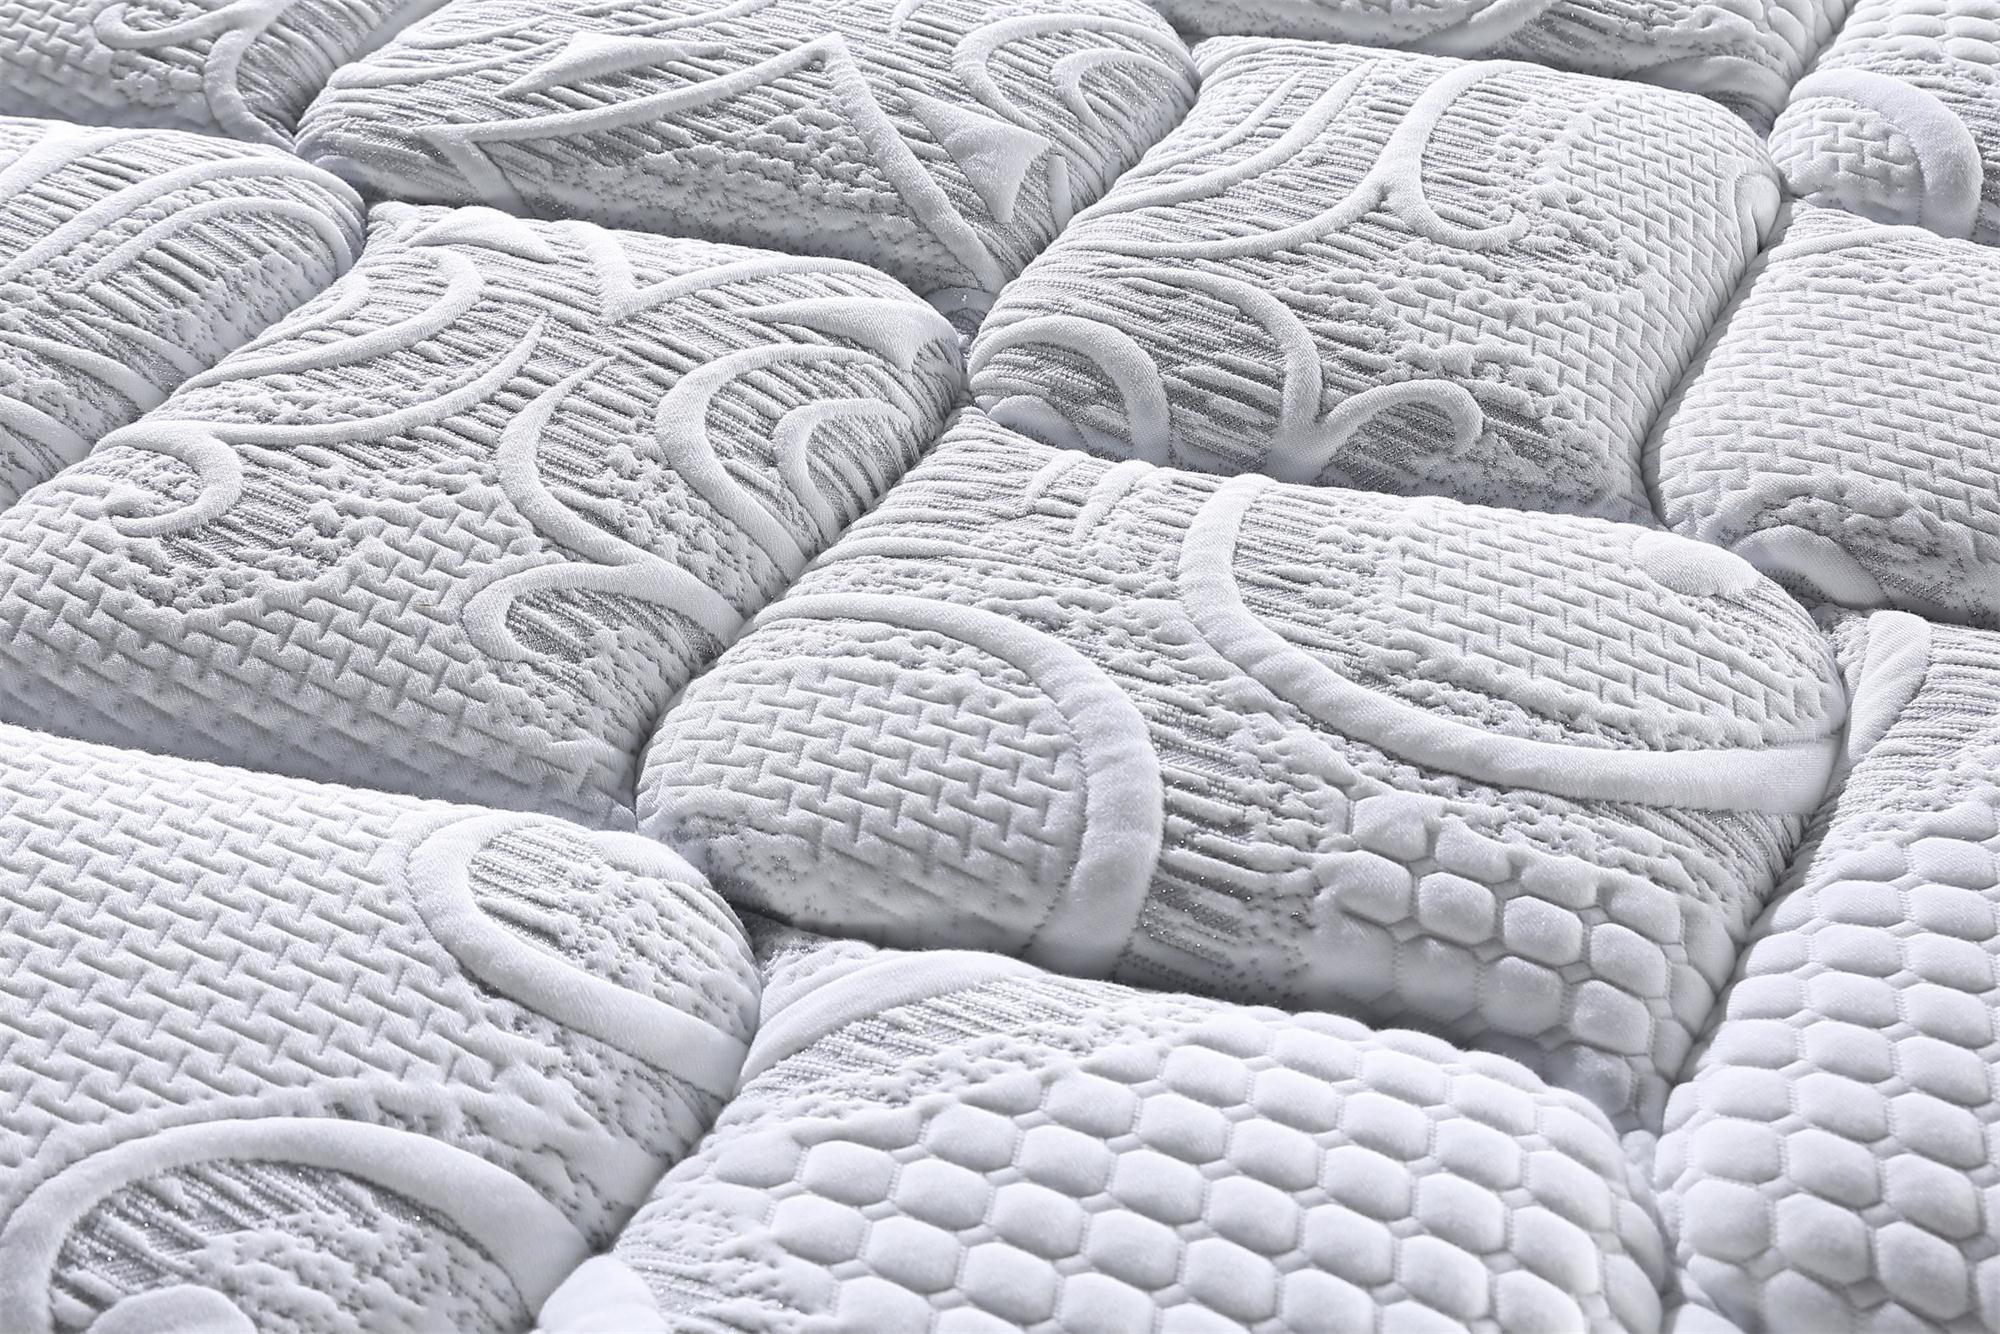 JLH hot-sale trundle bed mattress for sale delivered easily-7